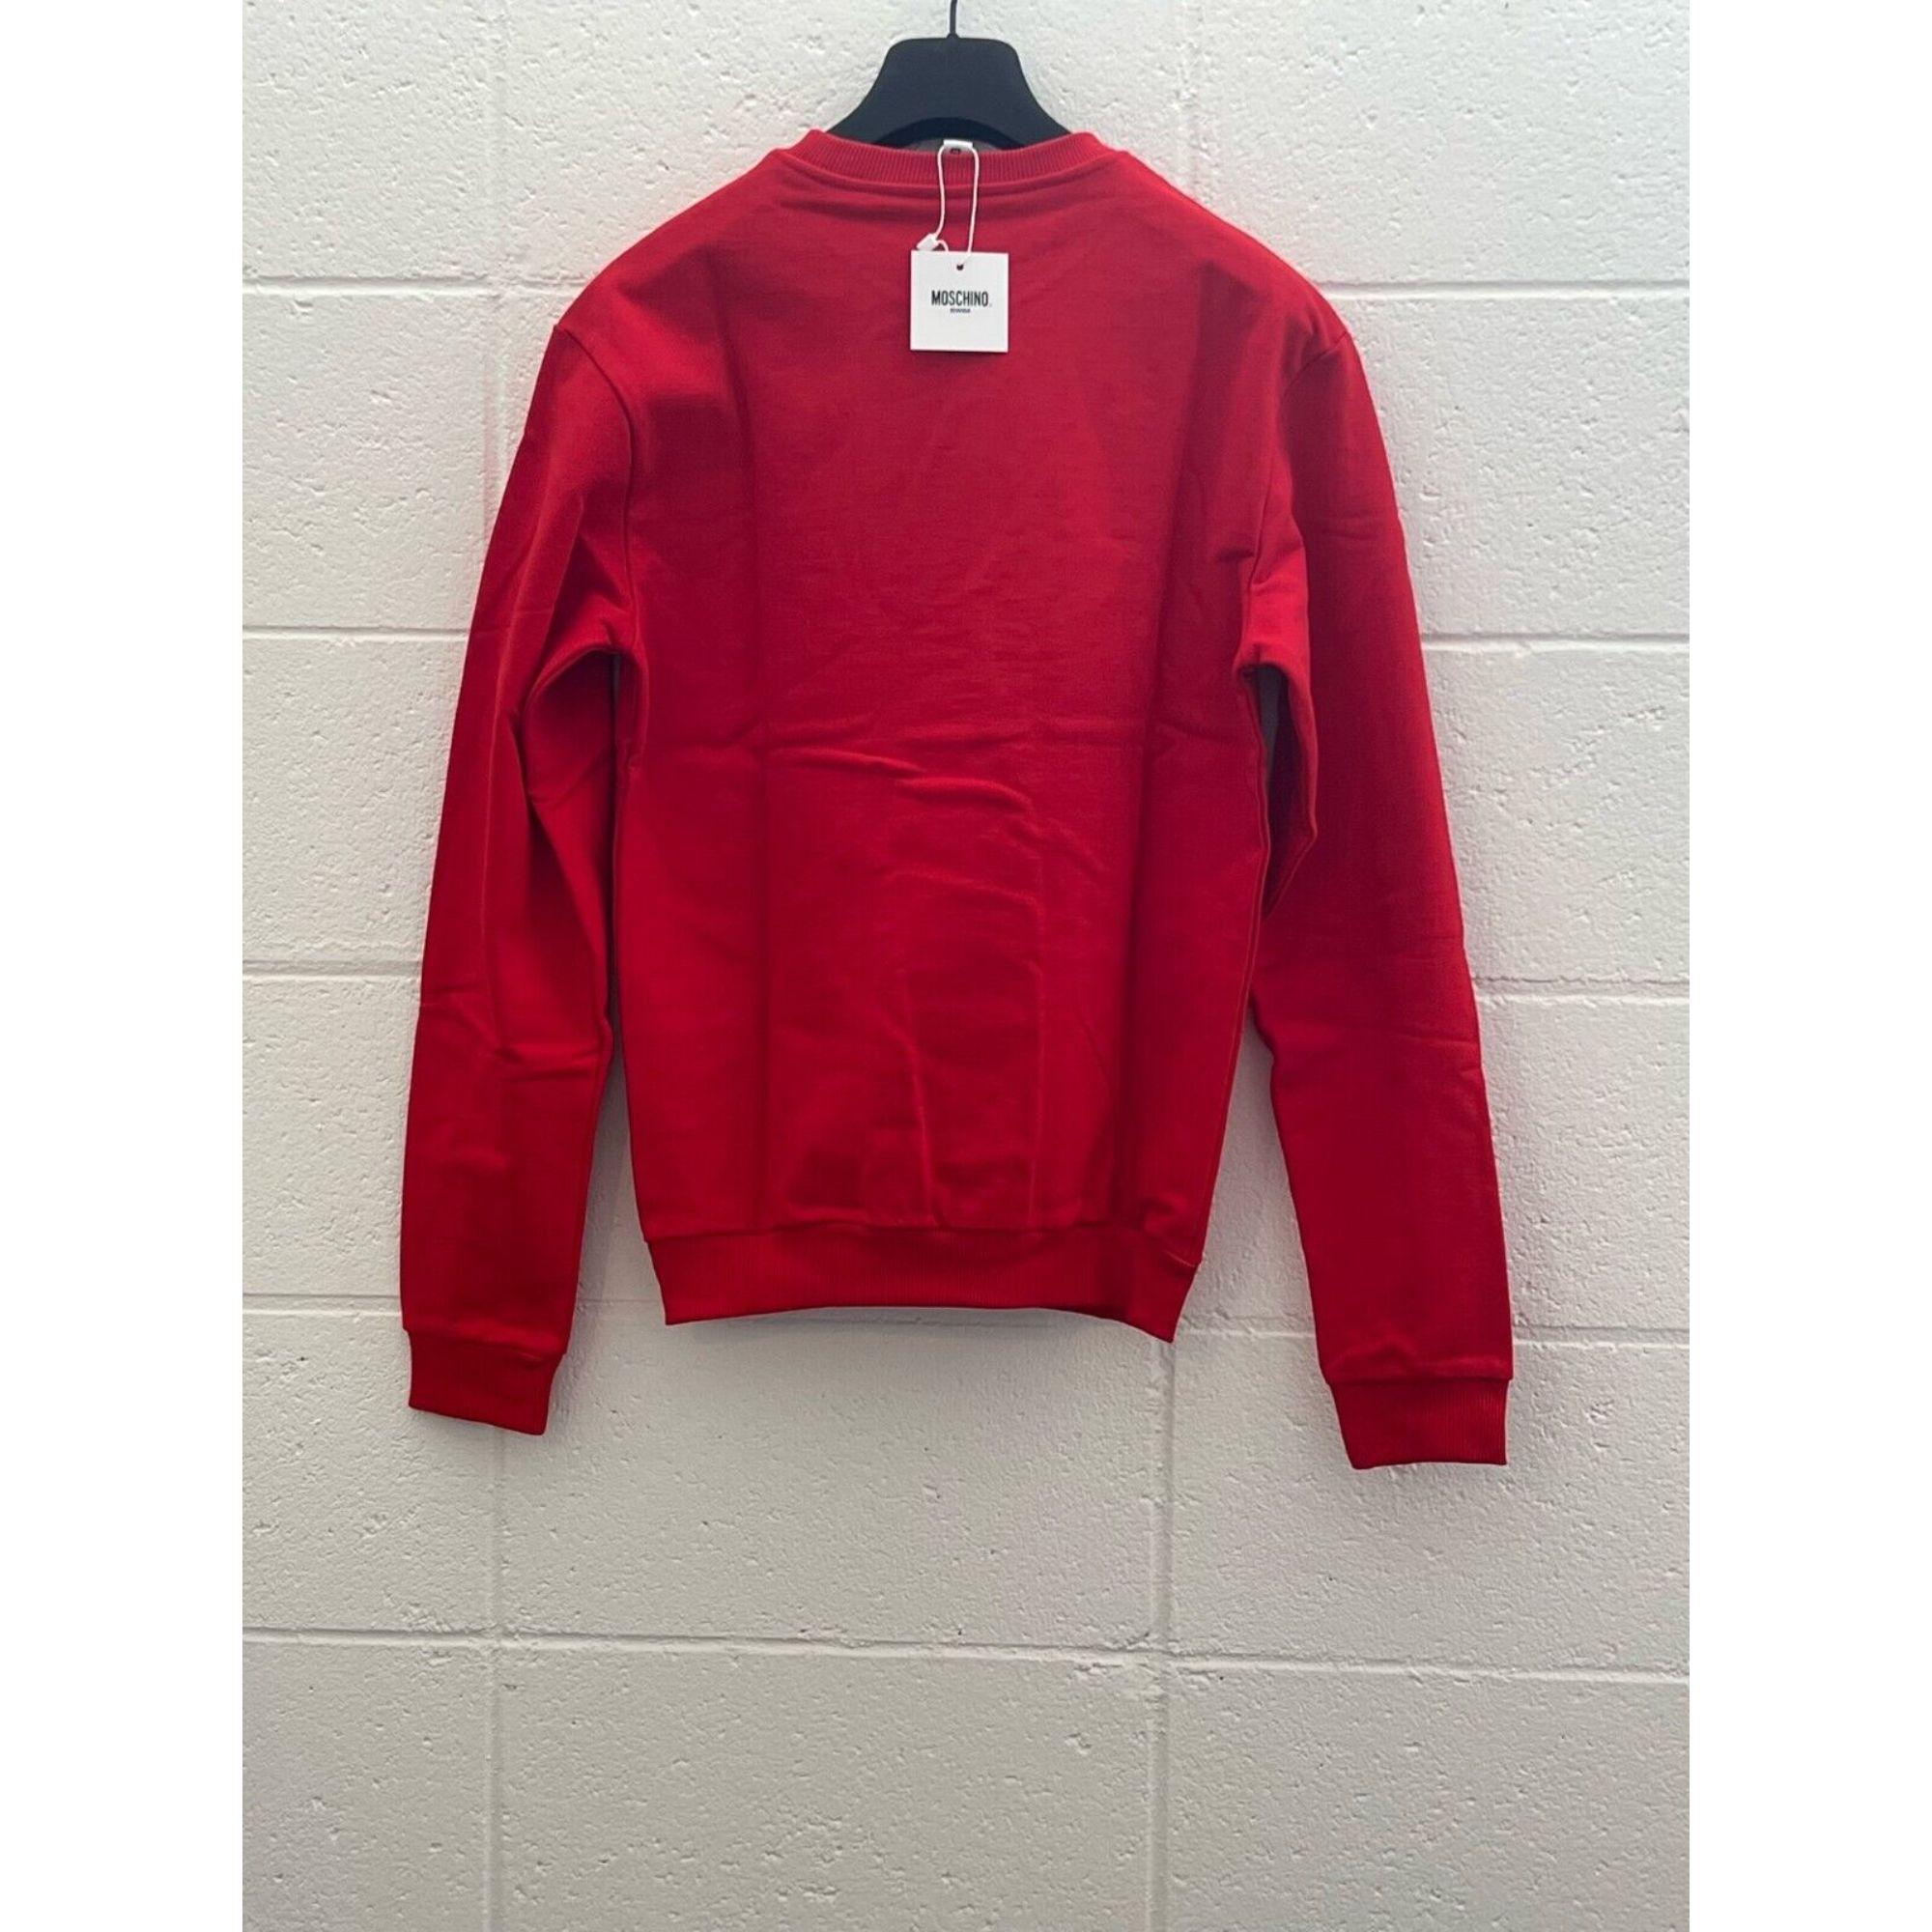 Red SS19 Moschino Swim Jelly Gummy Teddy Bear Sweatshirt by Jeremy Scott, Size S For Sale